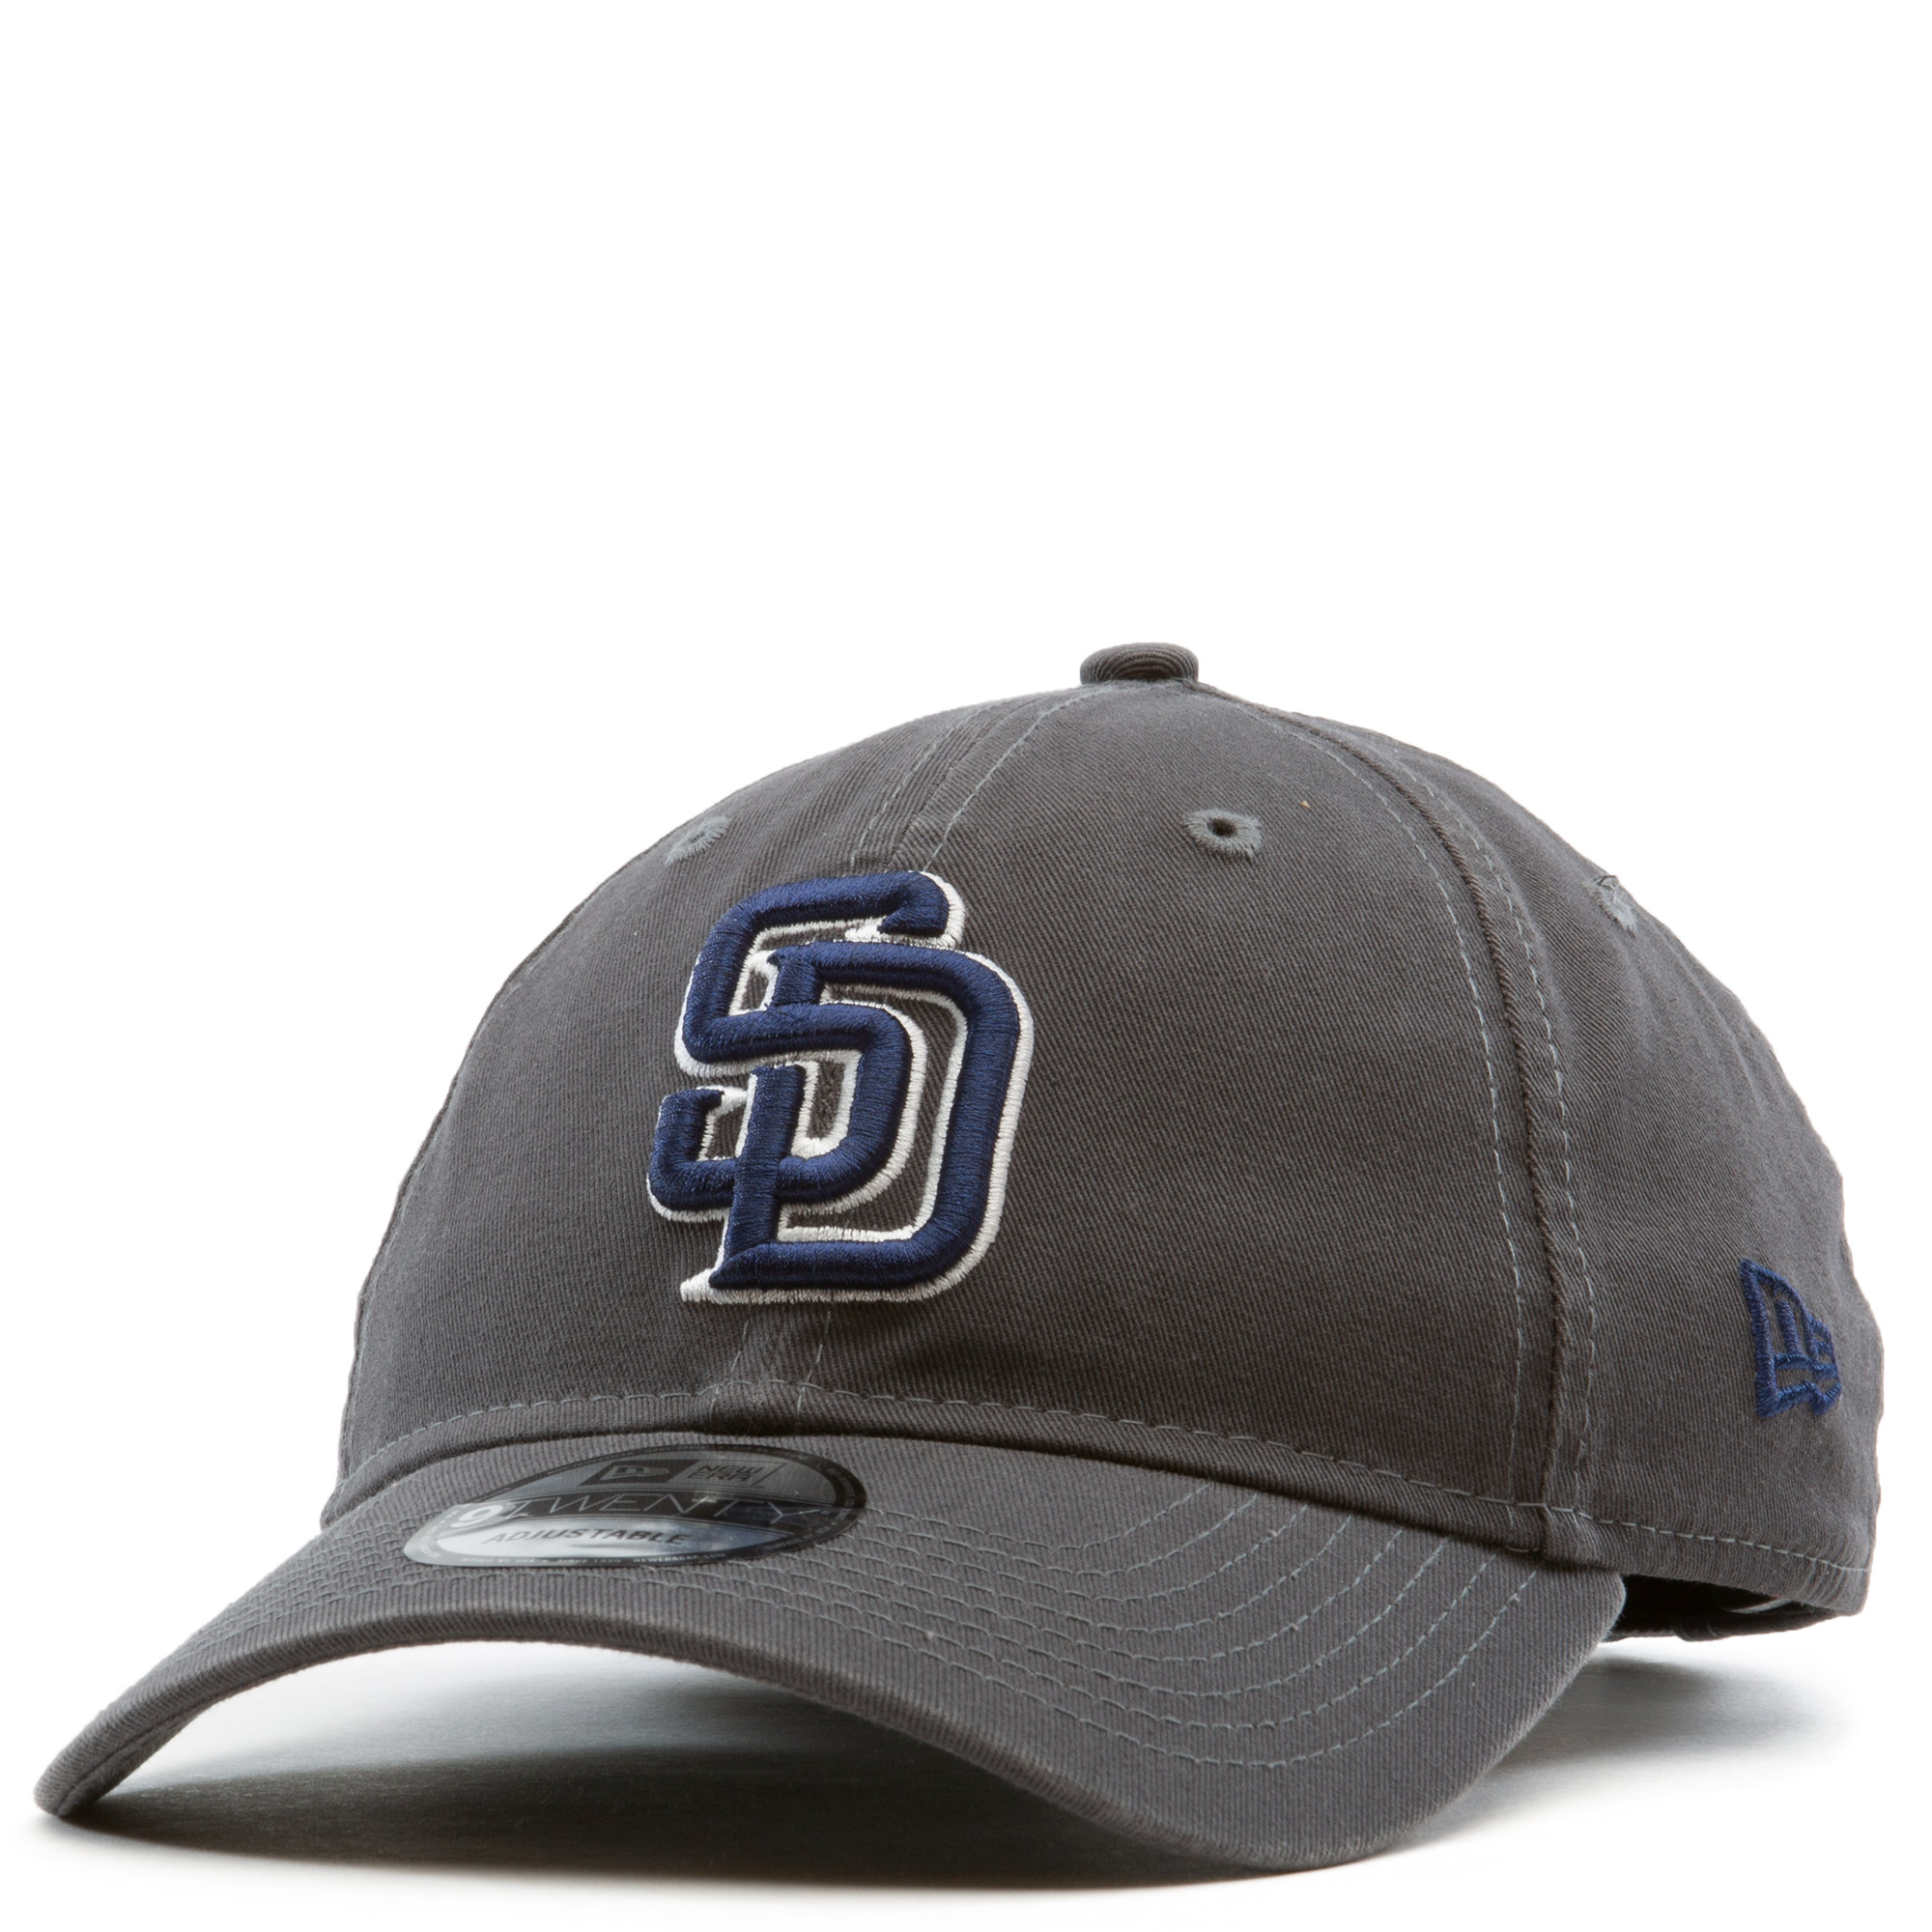 San Diego Padres Hats & Caps – New Era Cap